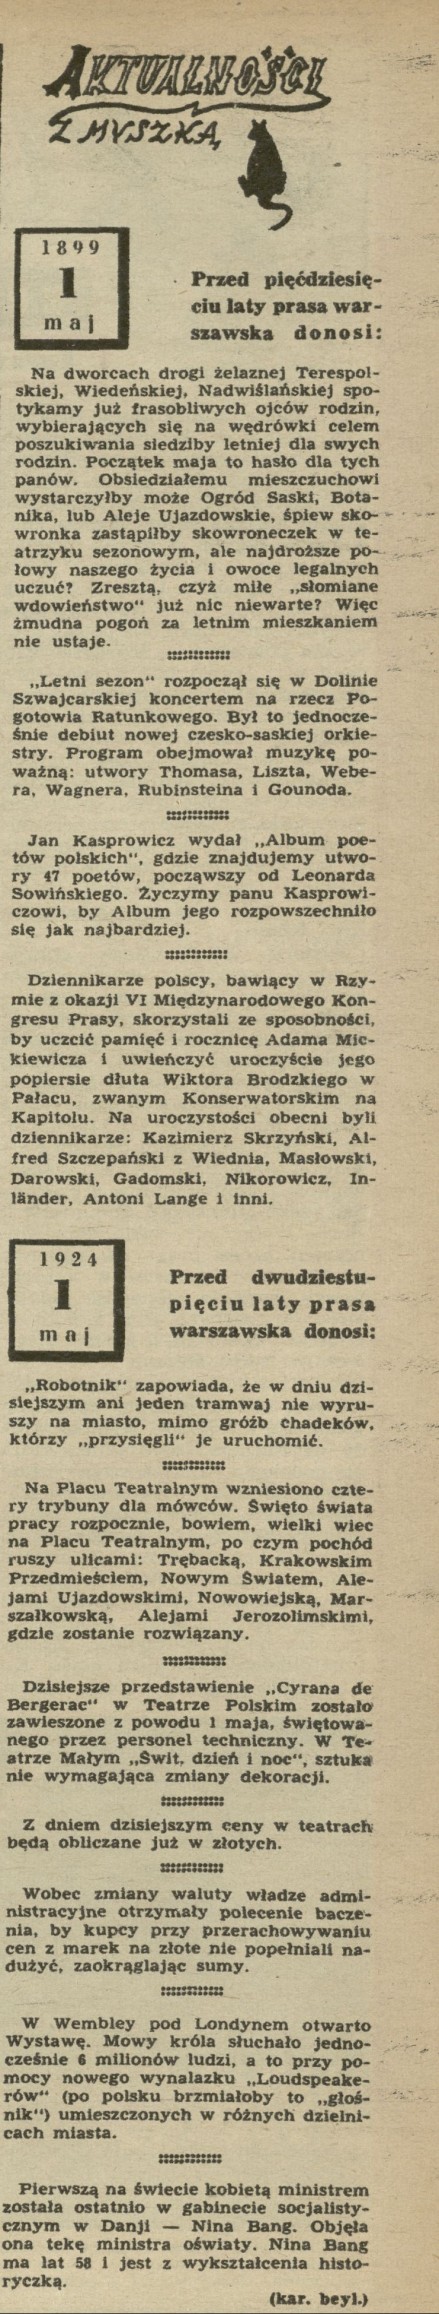 Przed pięćdziesięciu laty prasa warszawska donosi